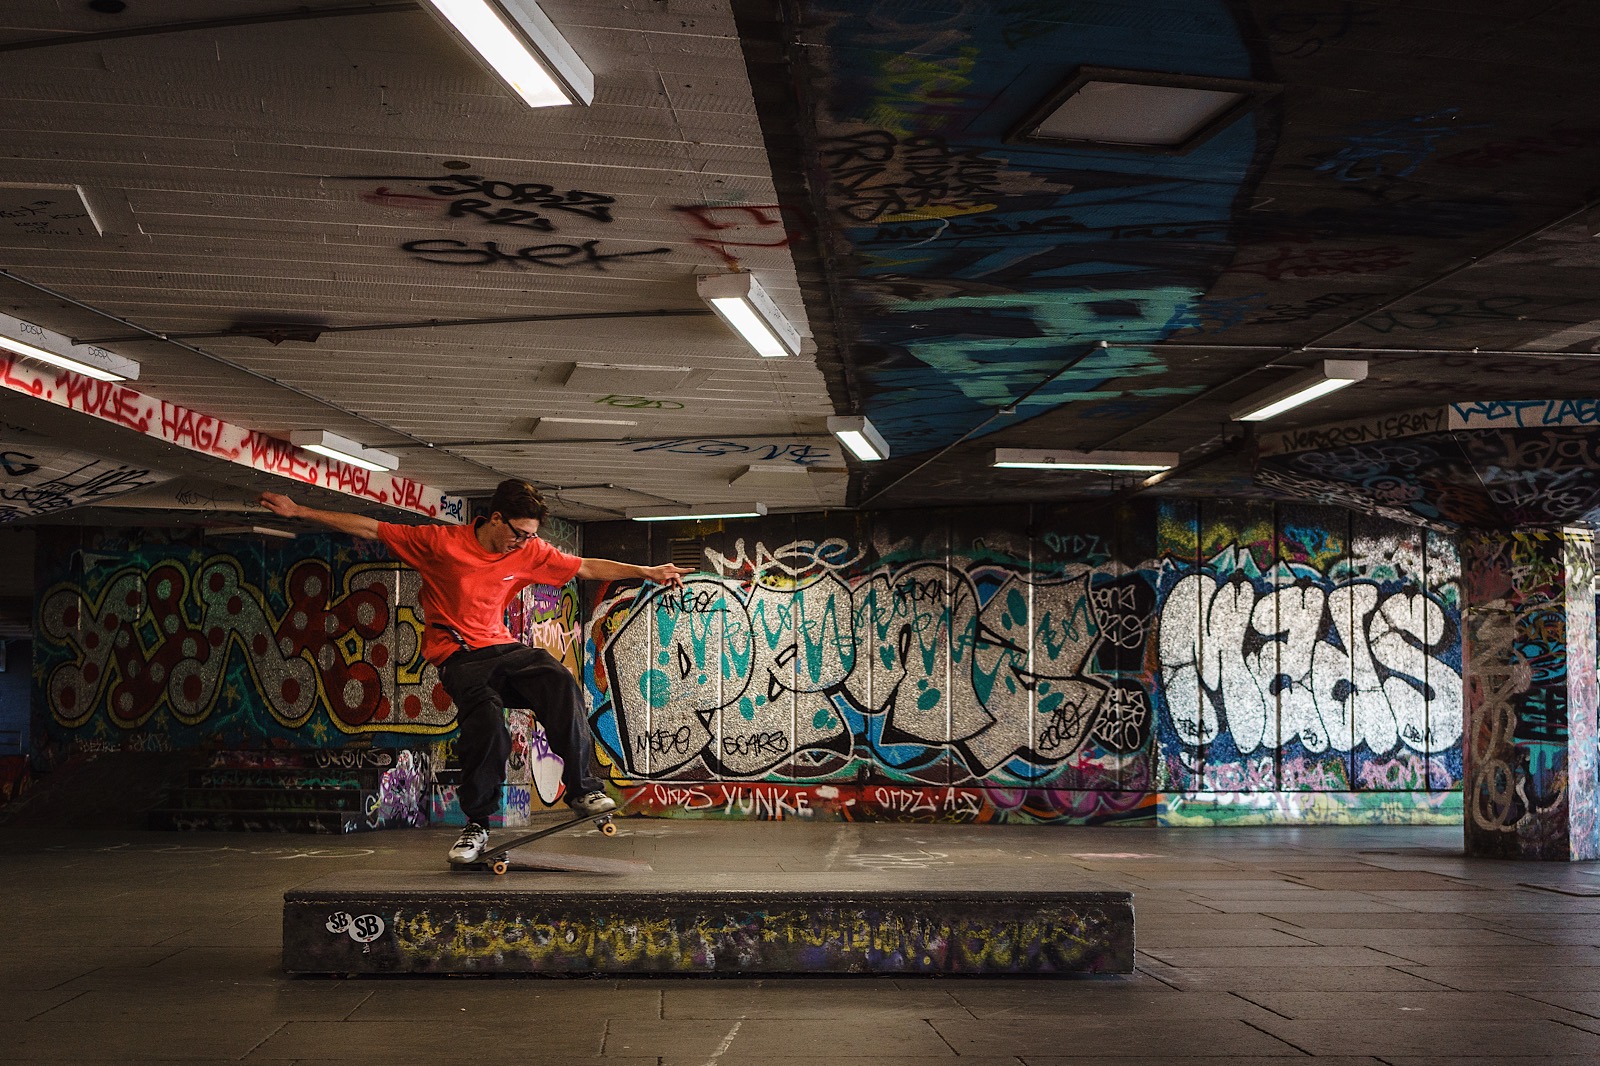 skateboarder doing tricks